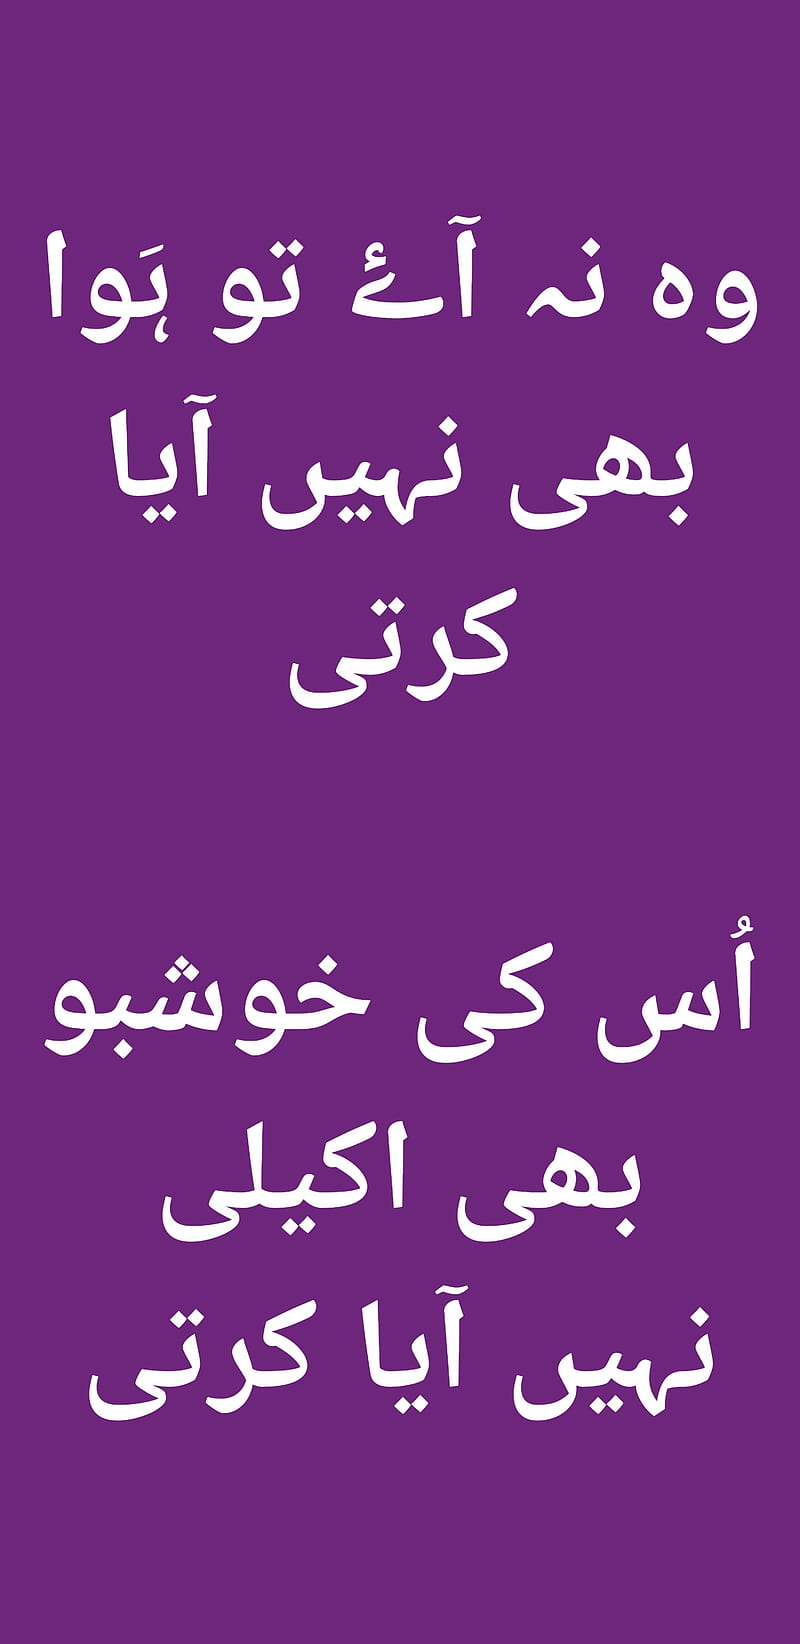 HD urdu sad poetry wallpapers | Peakpx